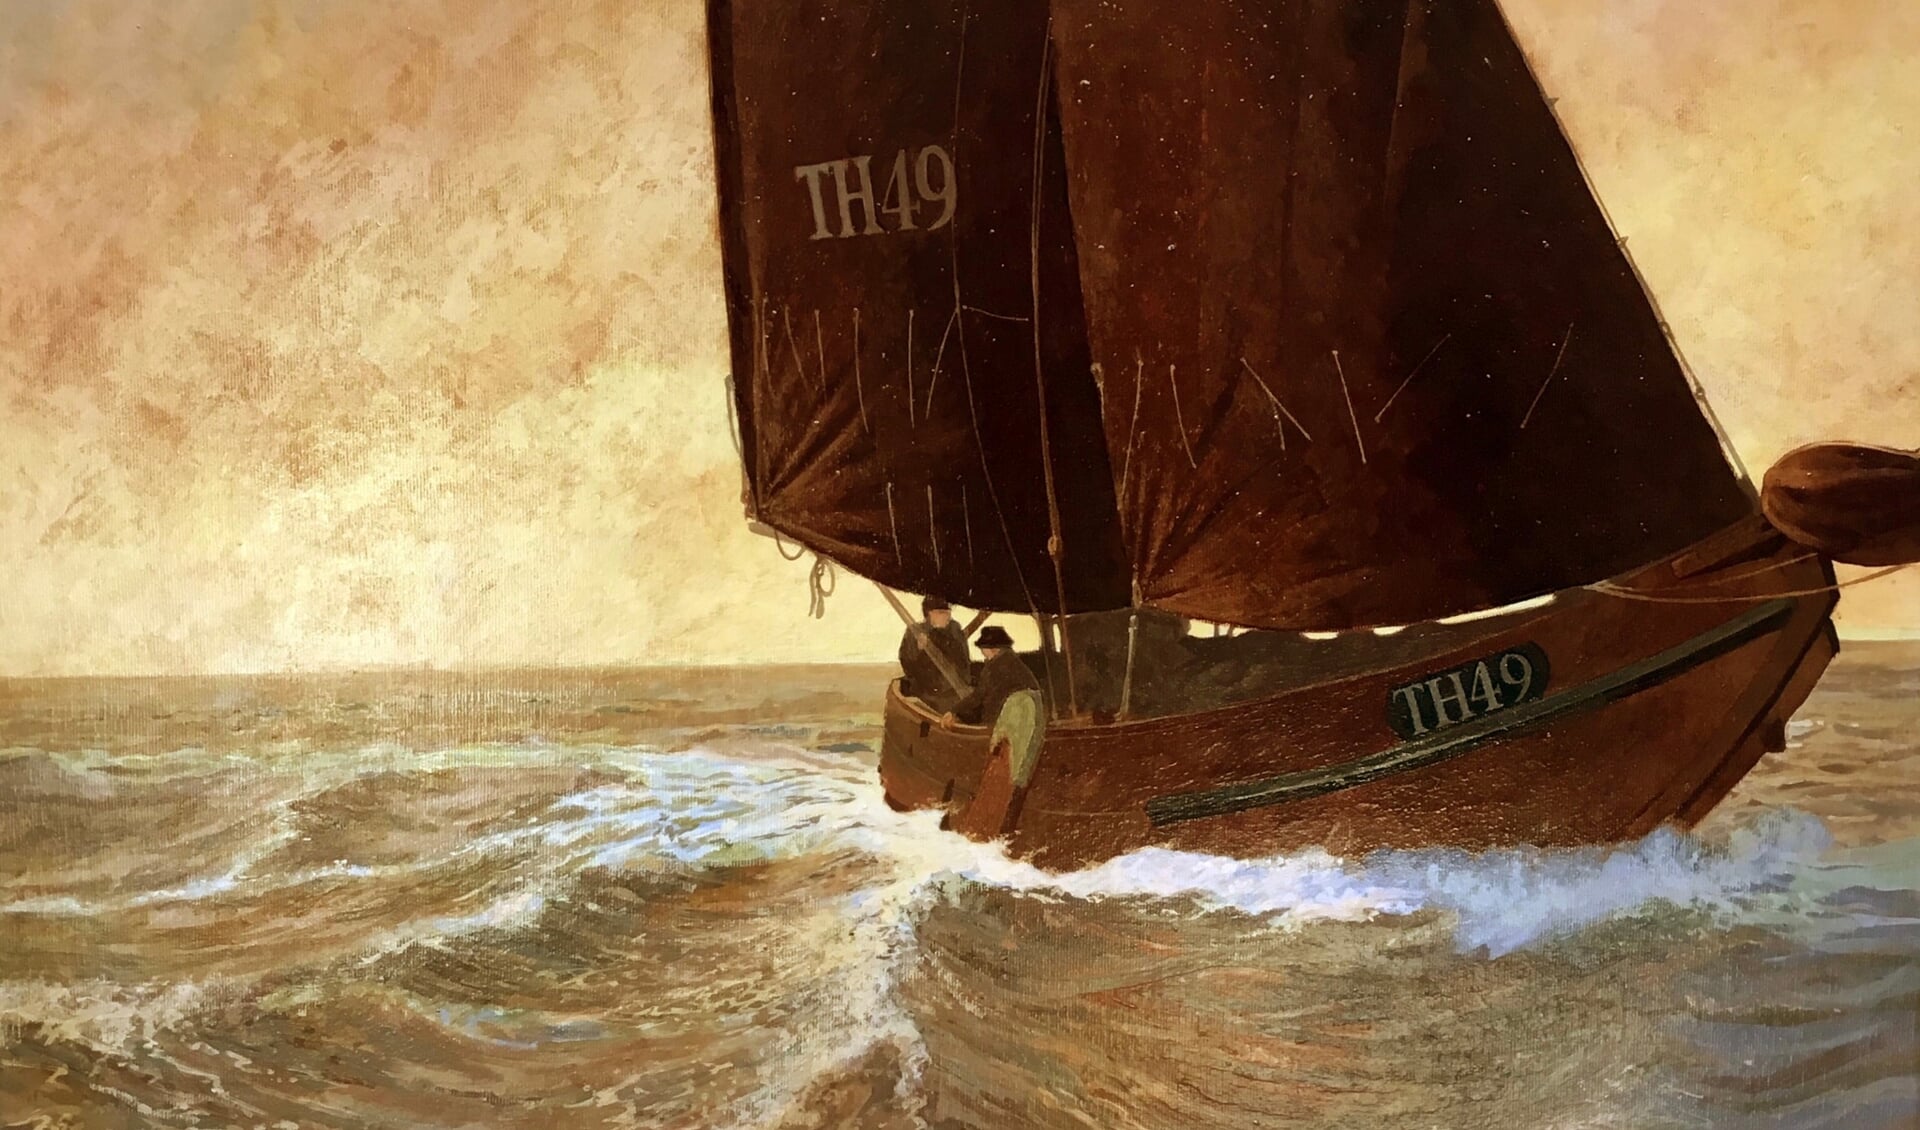 De TH49 is een Zeeuwse hoogaars, geschilderd met meekrap pigment.